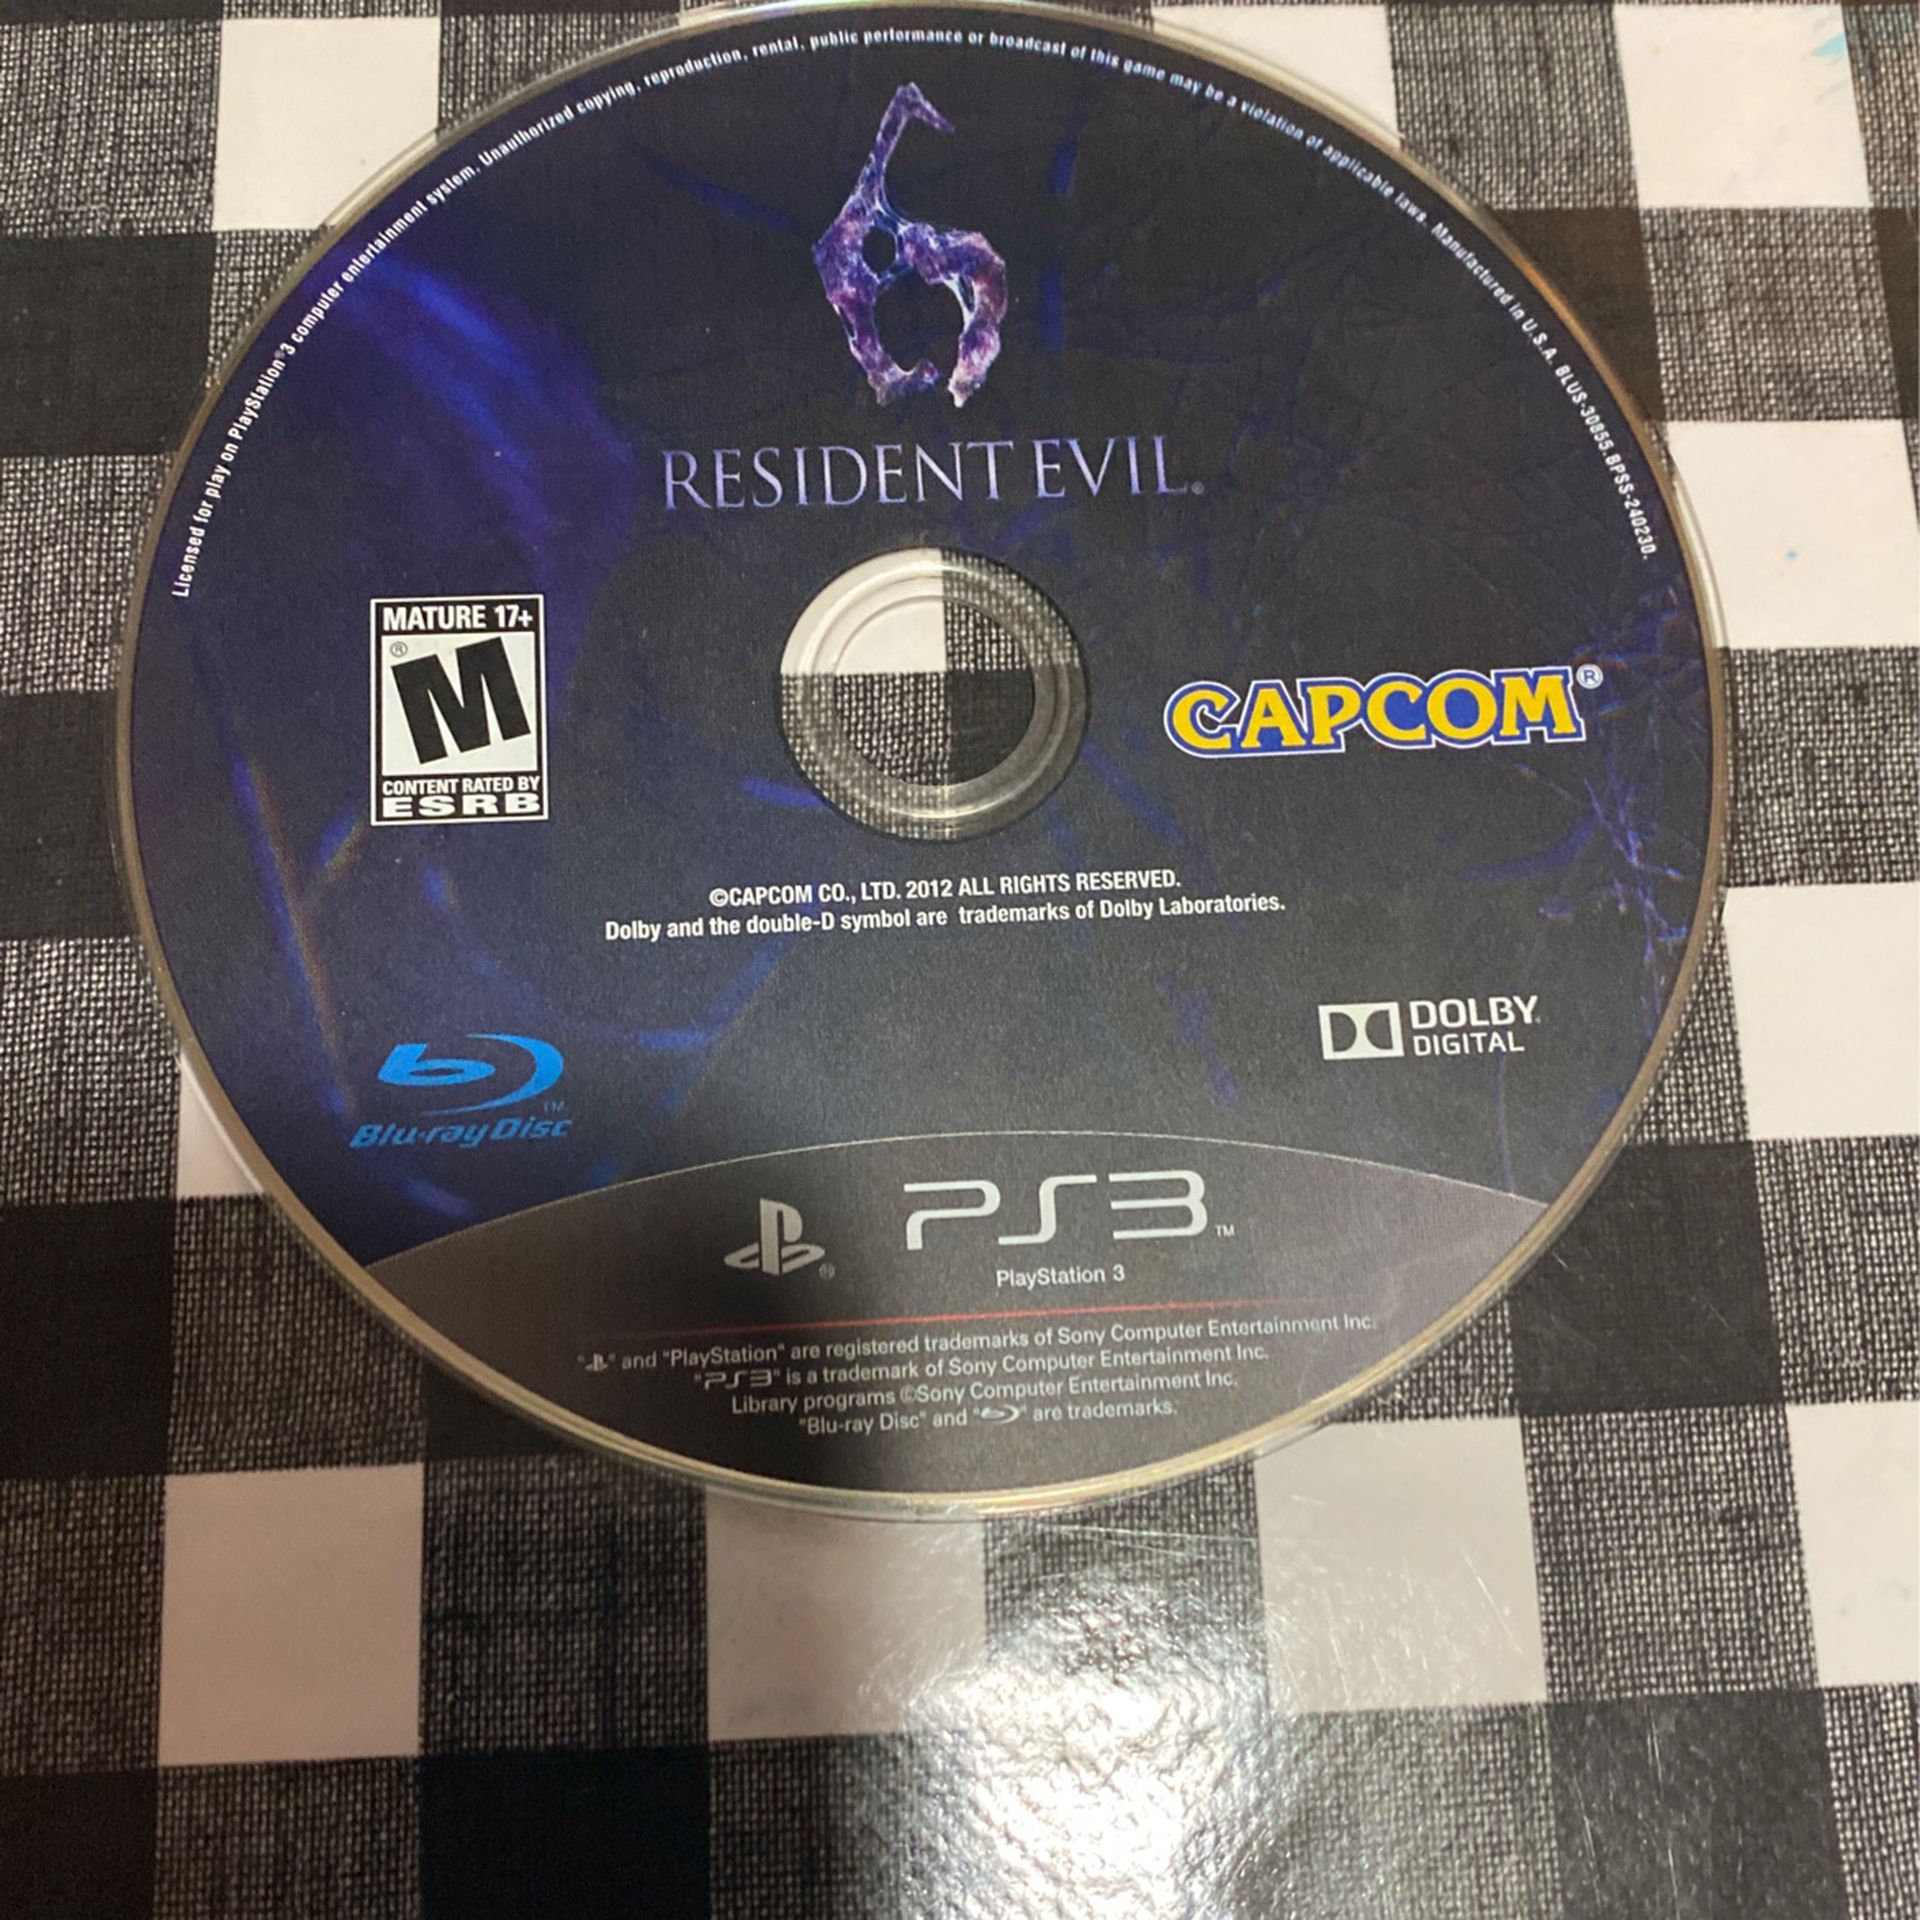 Resident Evil 6 PS3 Game